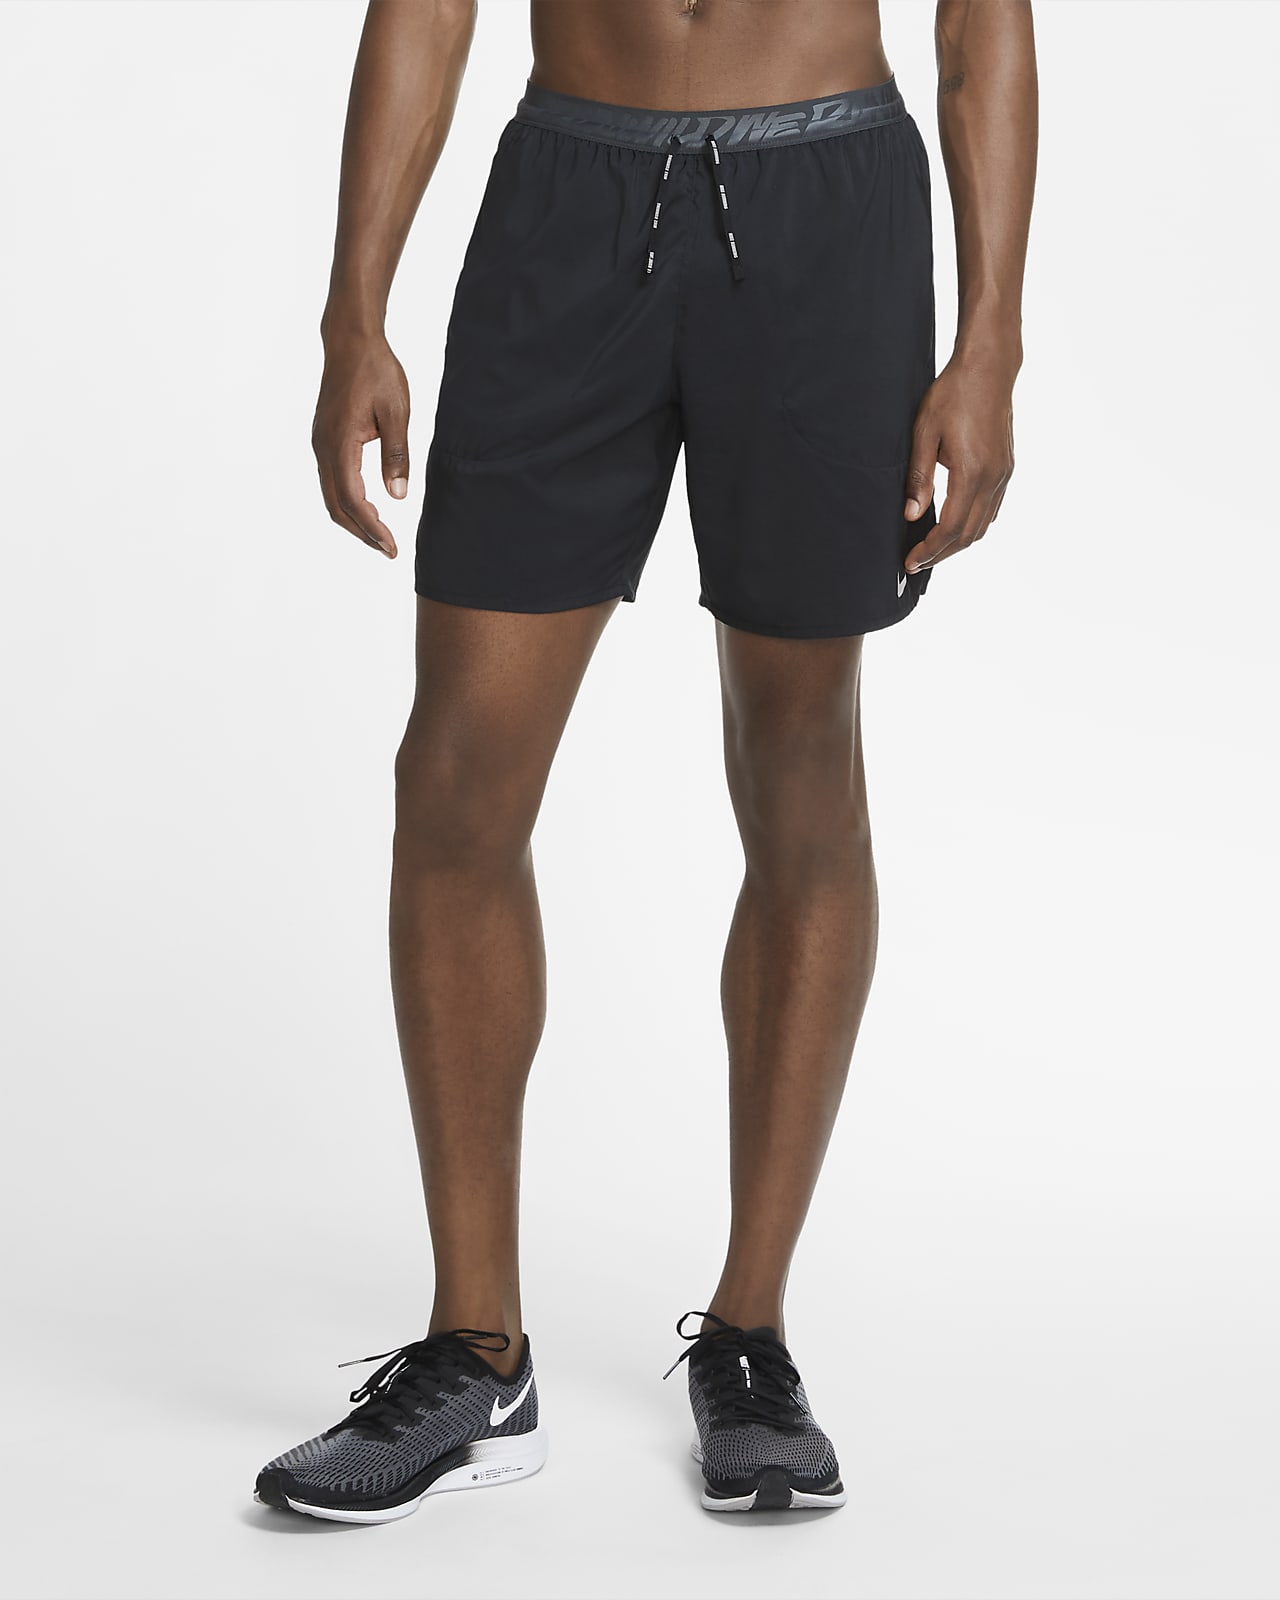 Nike Flex Stride Wild Run Men's Brief Running Shorts